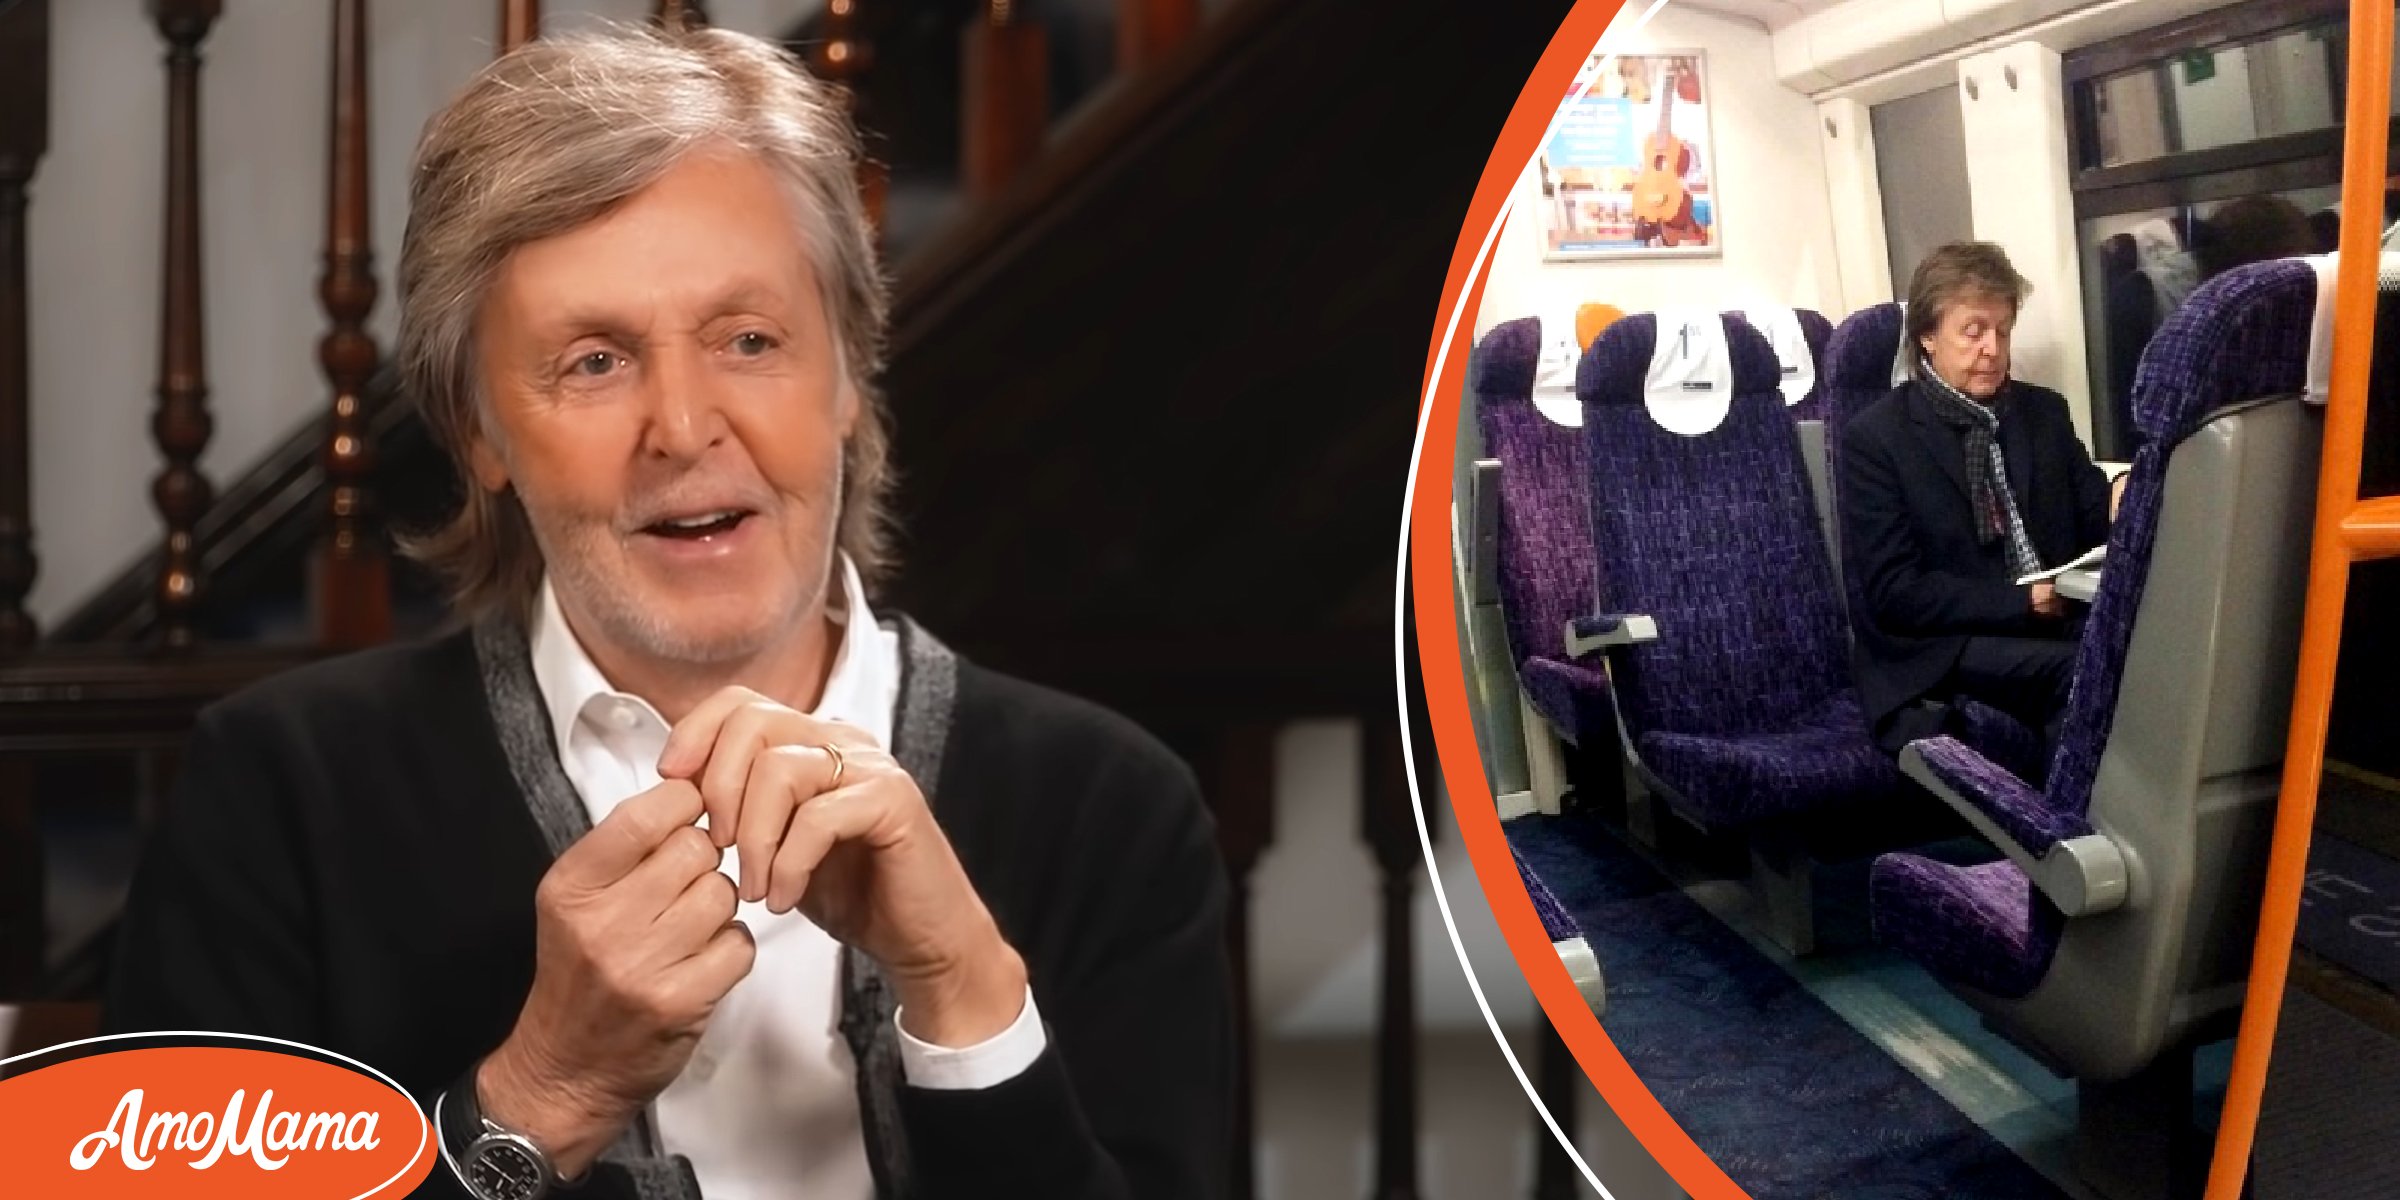 Le milliardaire Paul McCartney se déplace en bus et en métro – Sa fille dit qu’il est radin mais ses fans adorent sa modestie